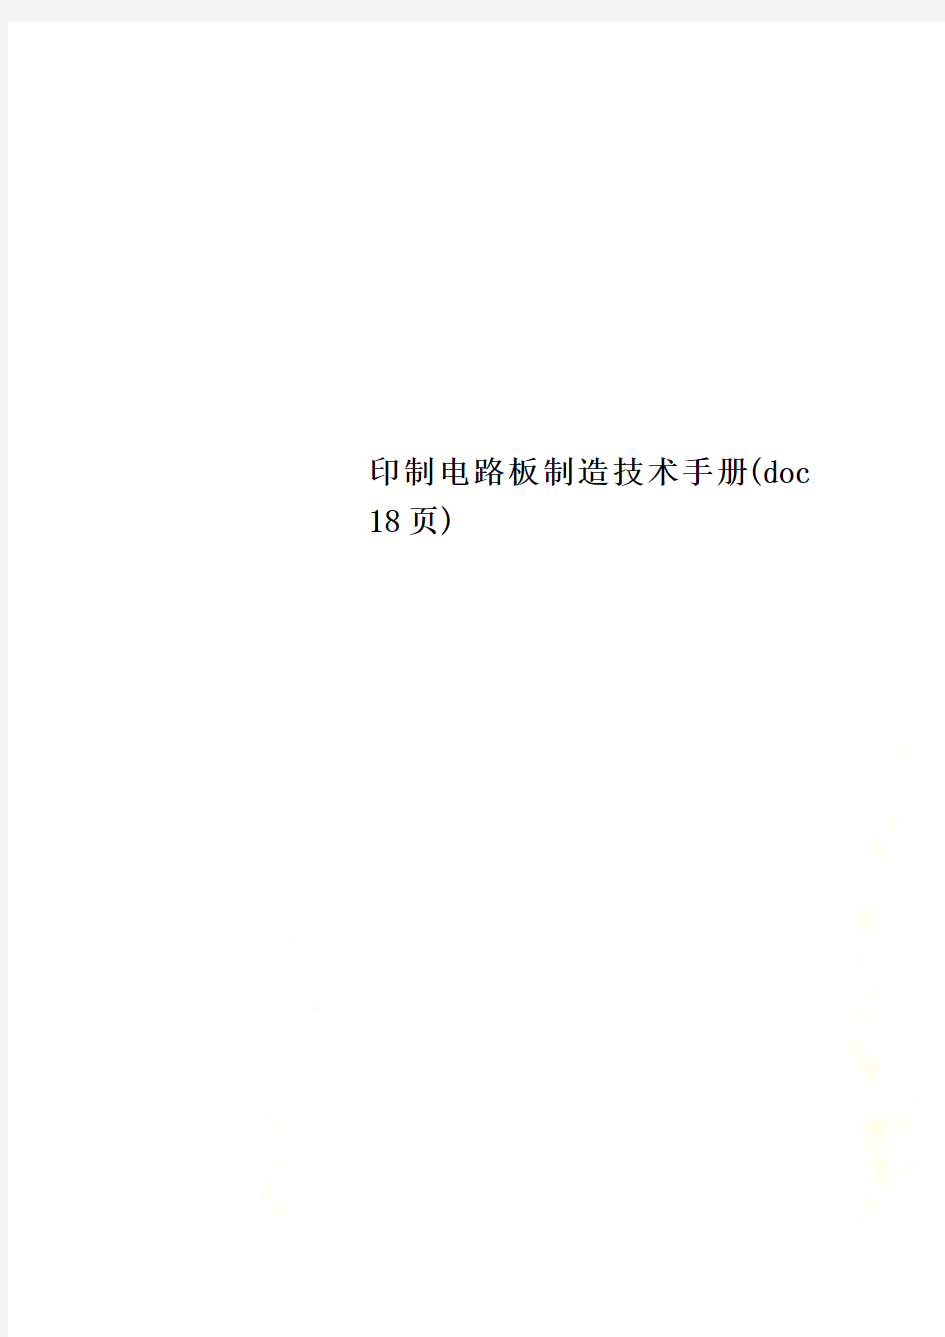 印制电路板制造技术手册(doc 18页)